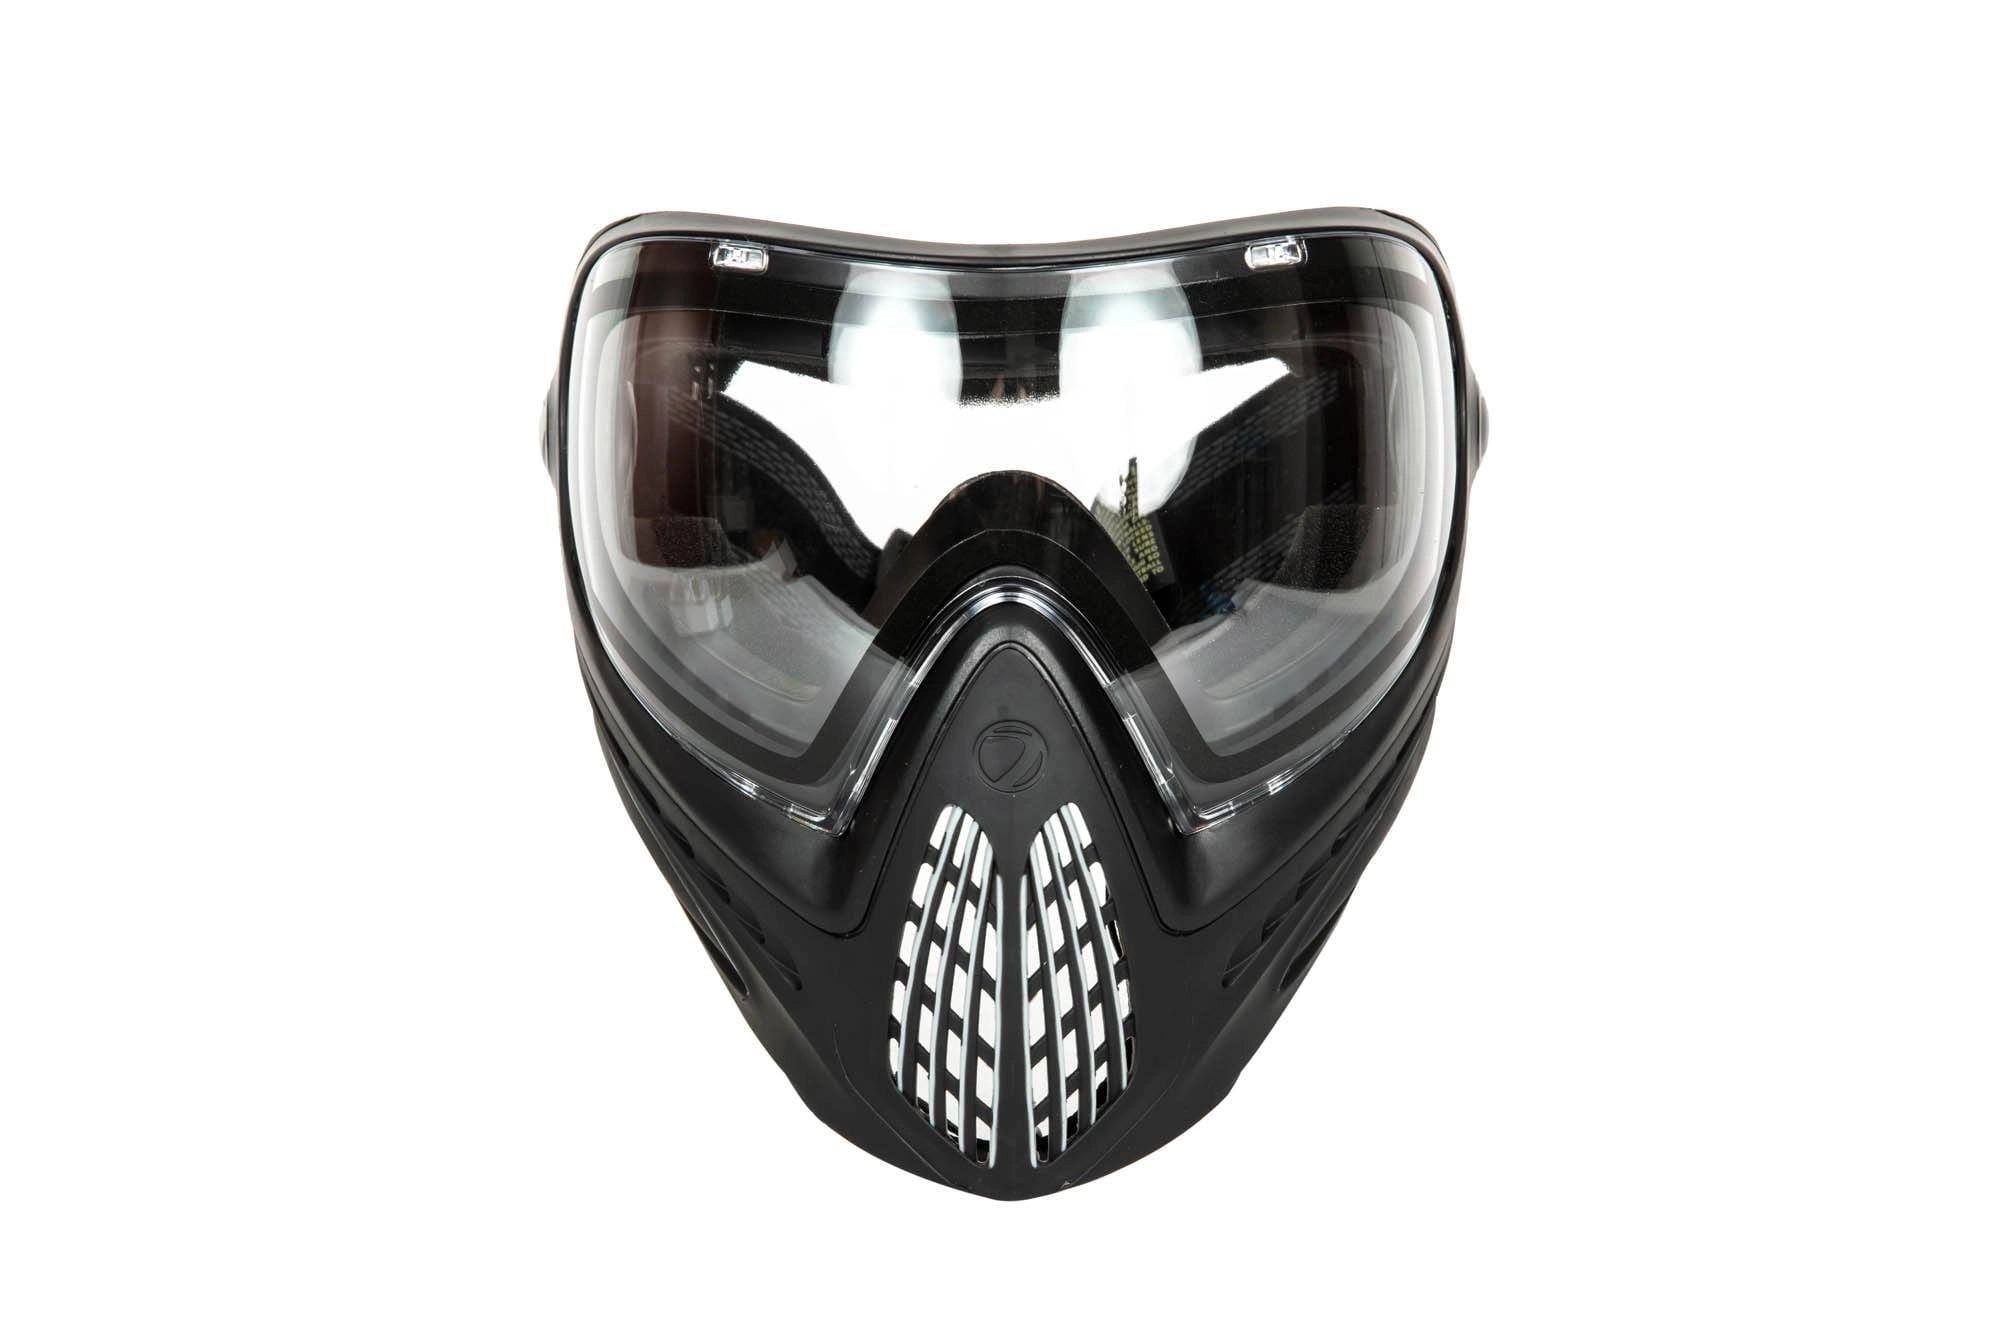 Masque Tactique pour Airsoft - Verres fumés - Masque de Protection